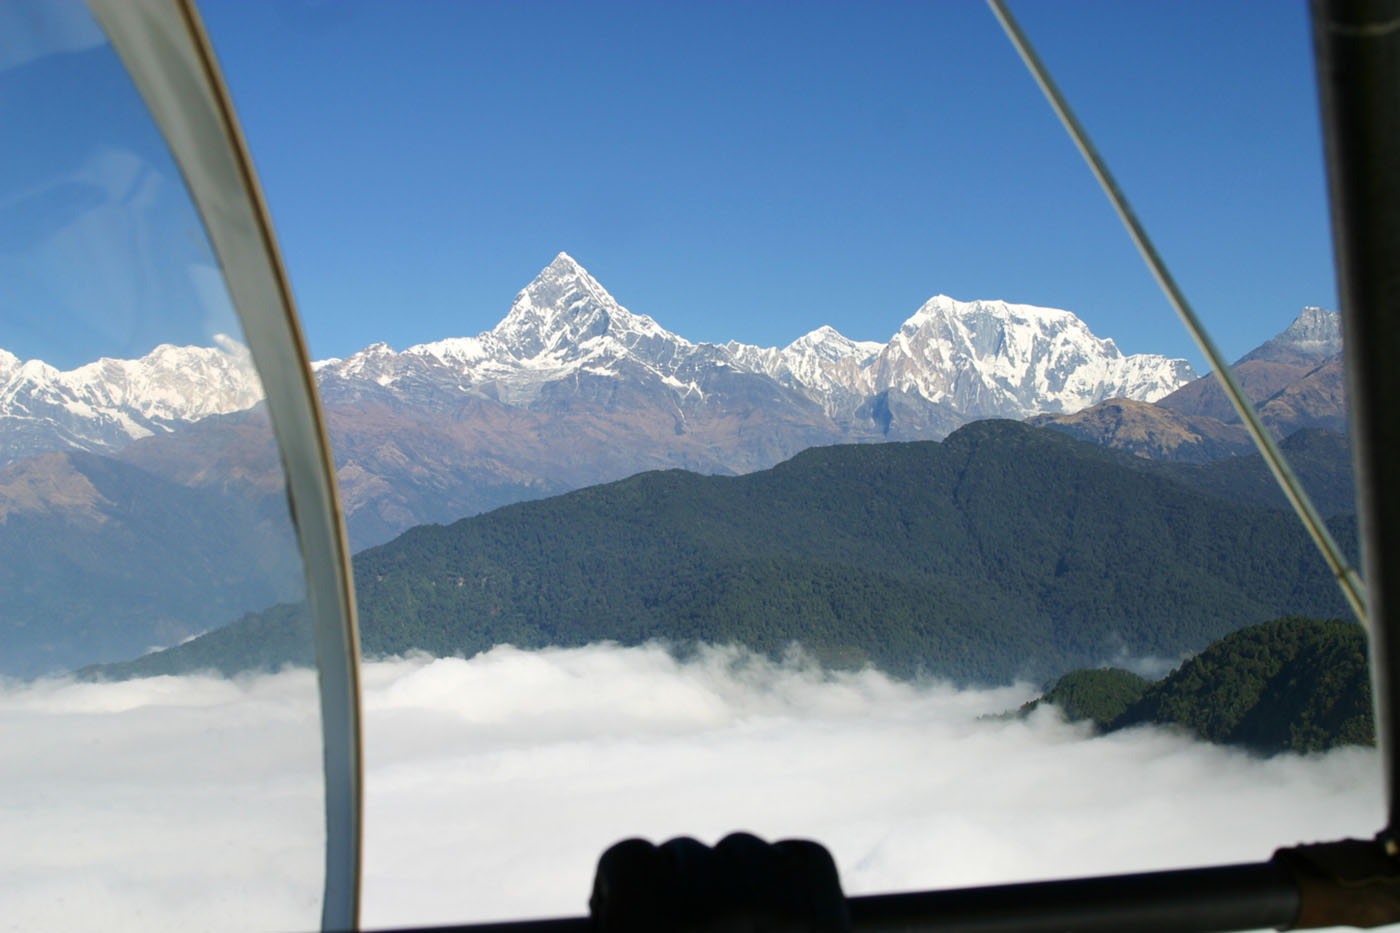 Microlight flight around Annapurna: High as a Kite